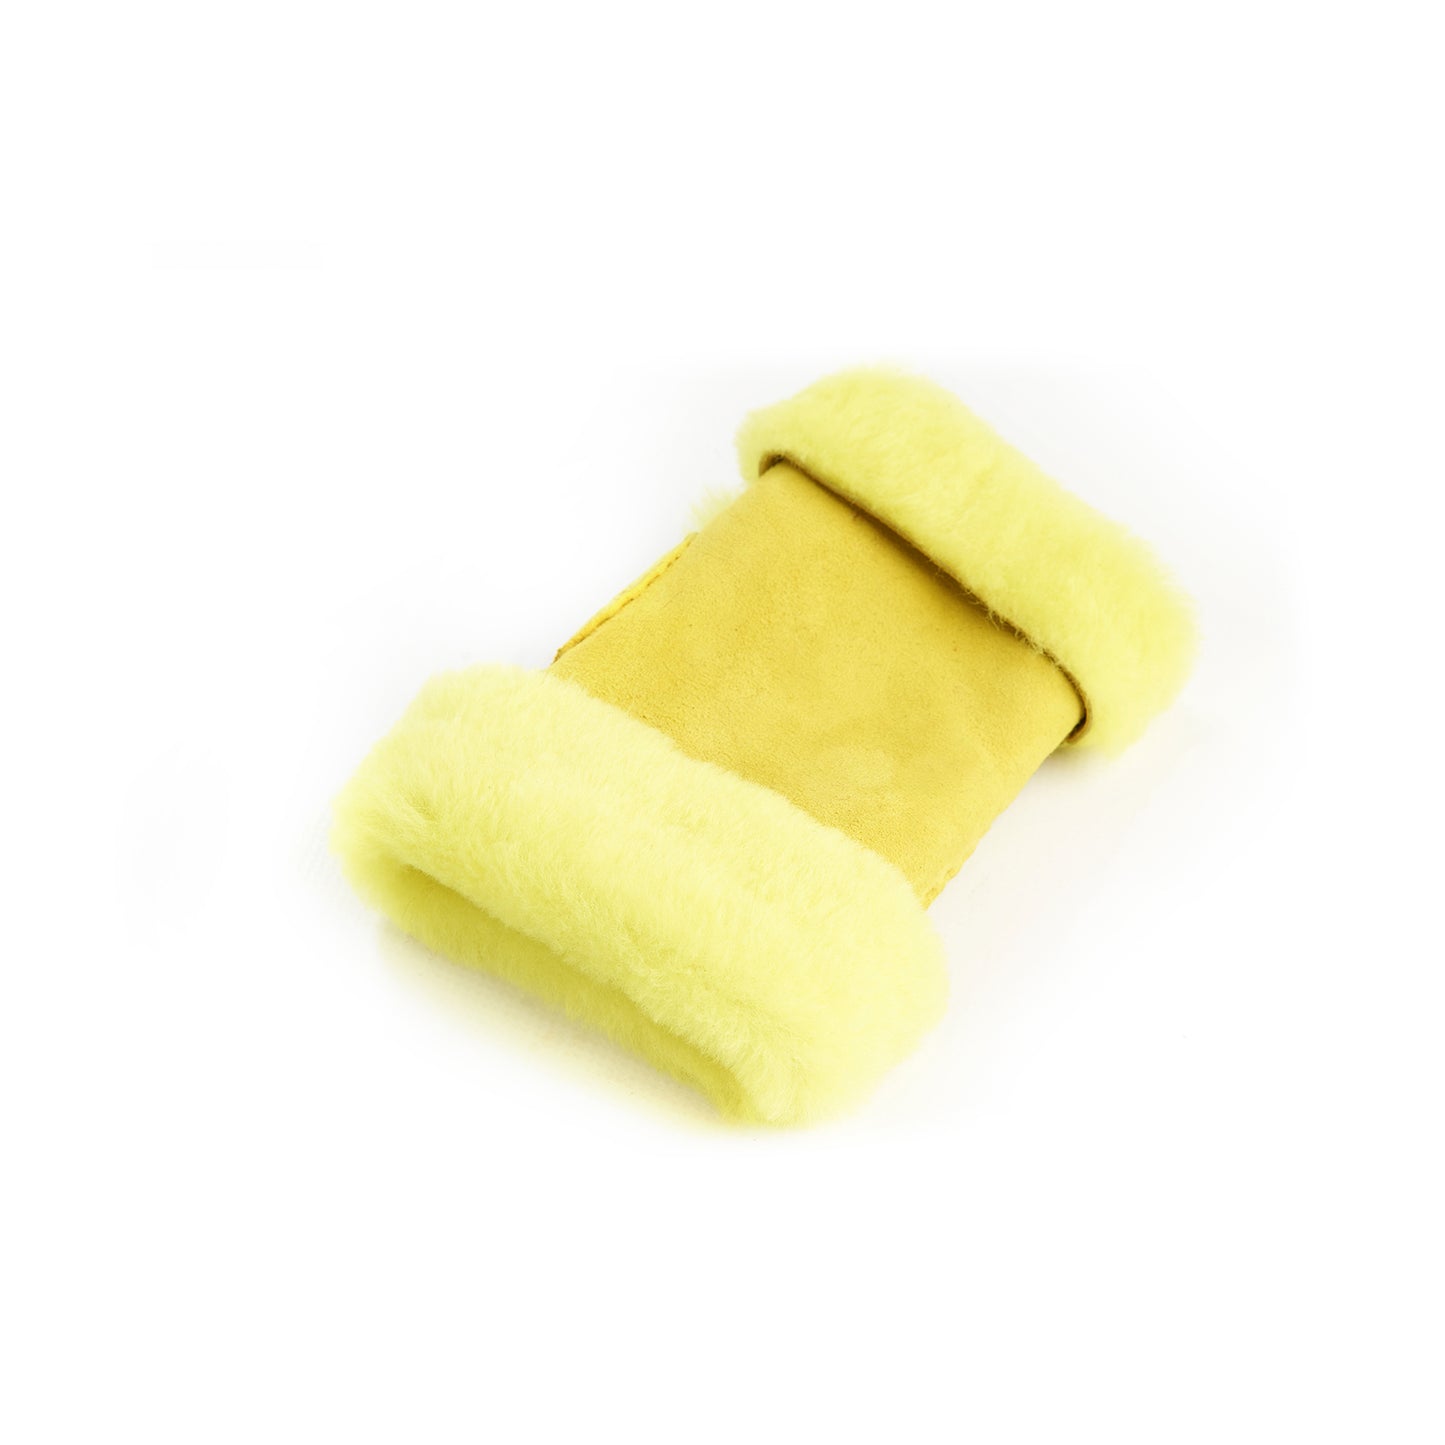 Women's lambskin fingerless in fluo yellow color